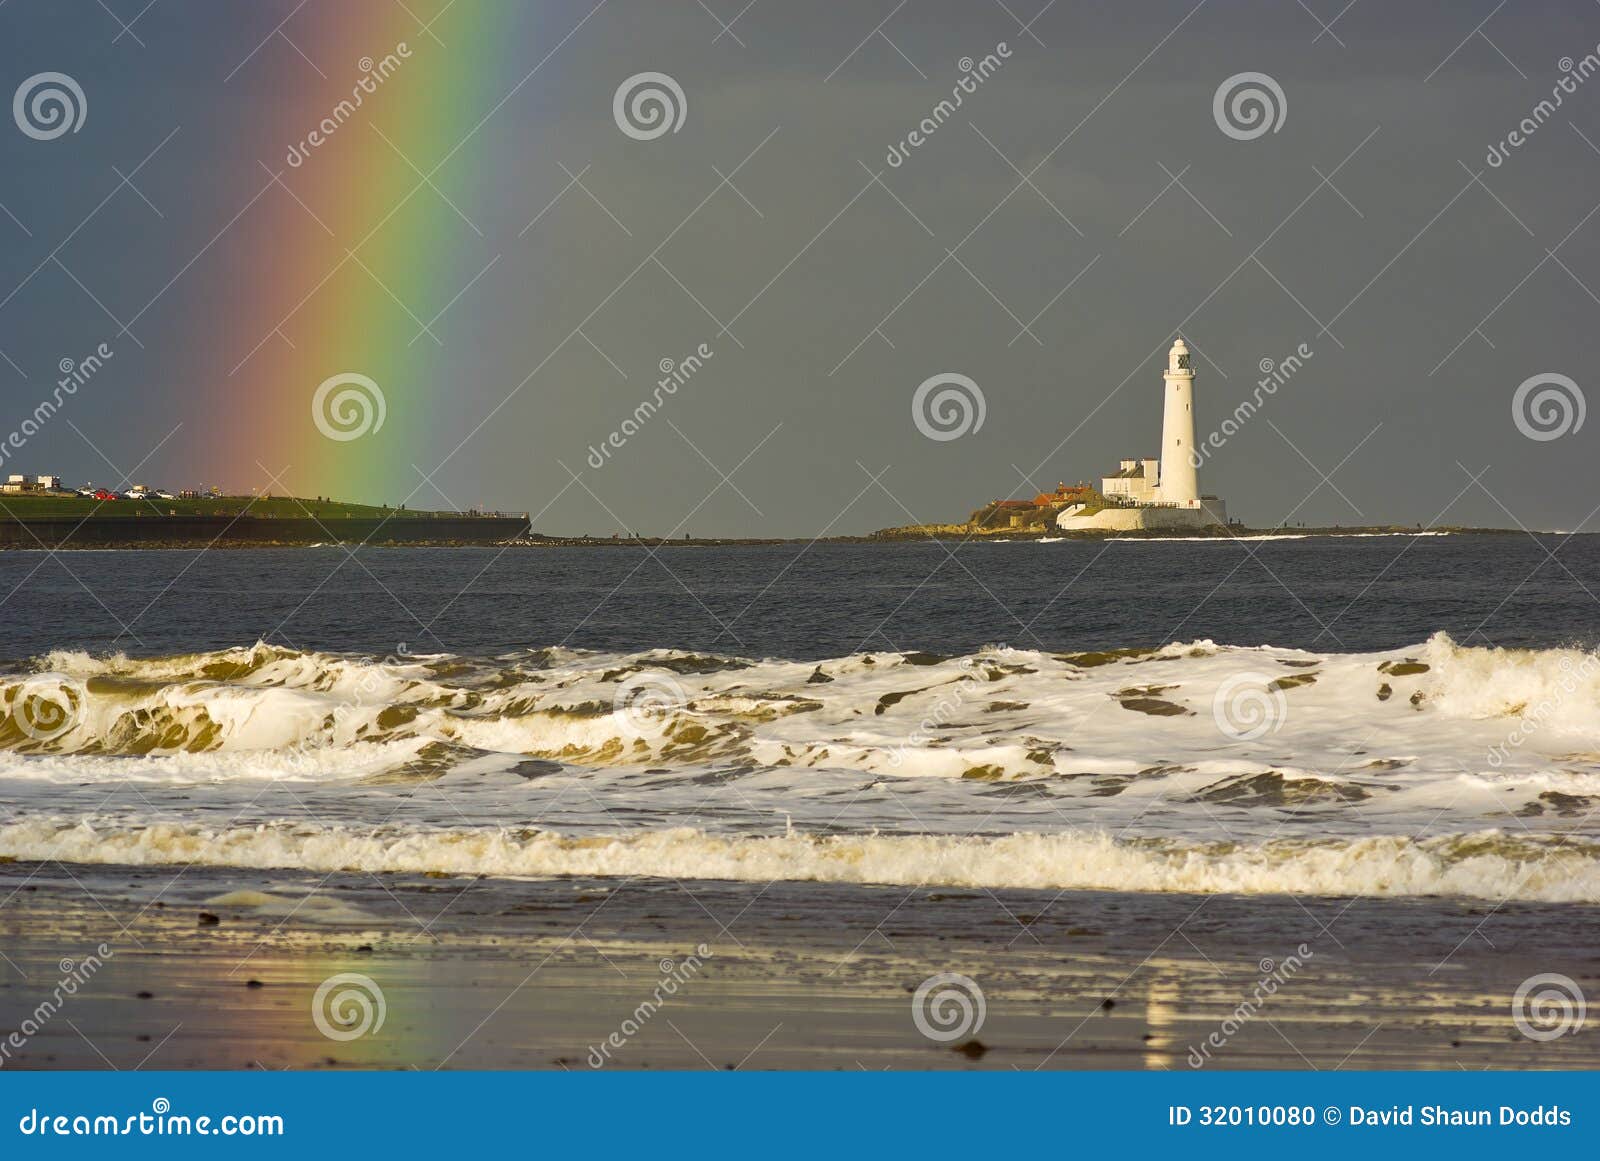 rainbow at st. marys lighthouse near newcastle